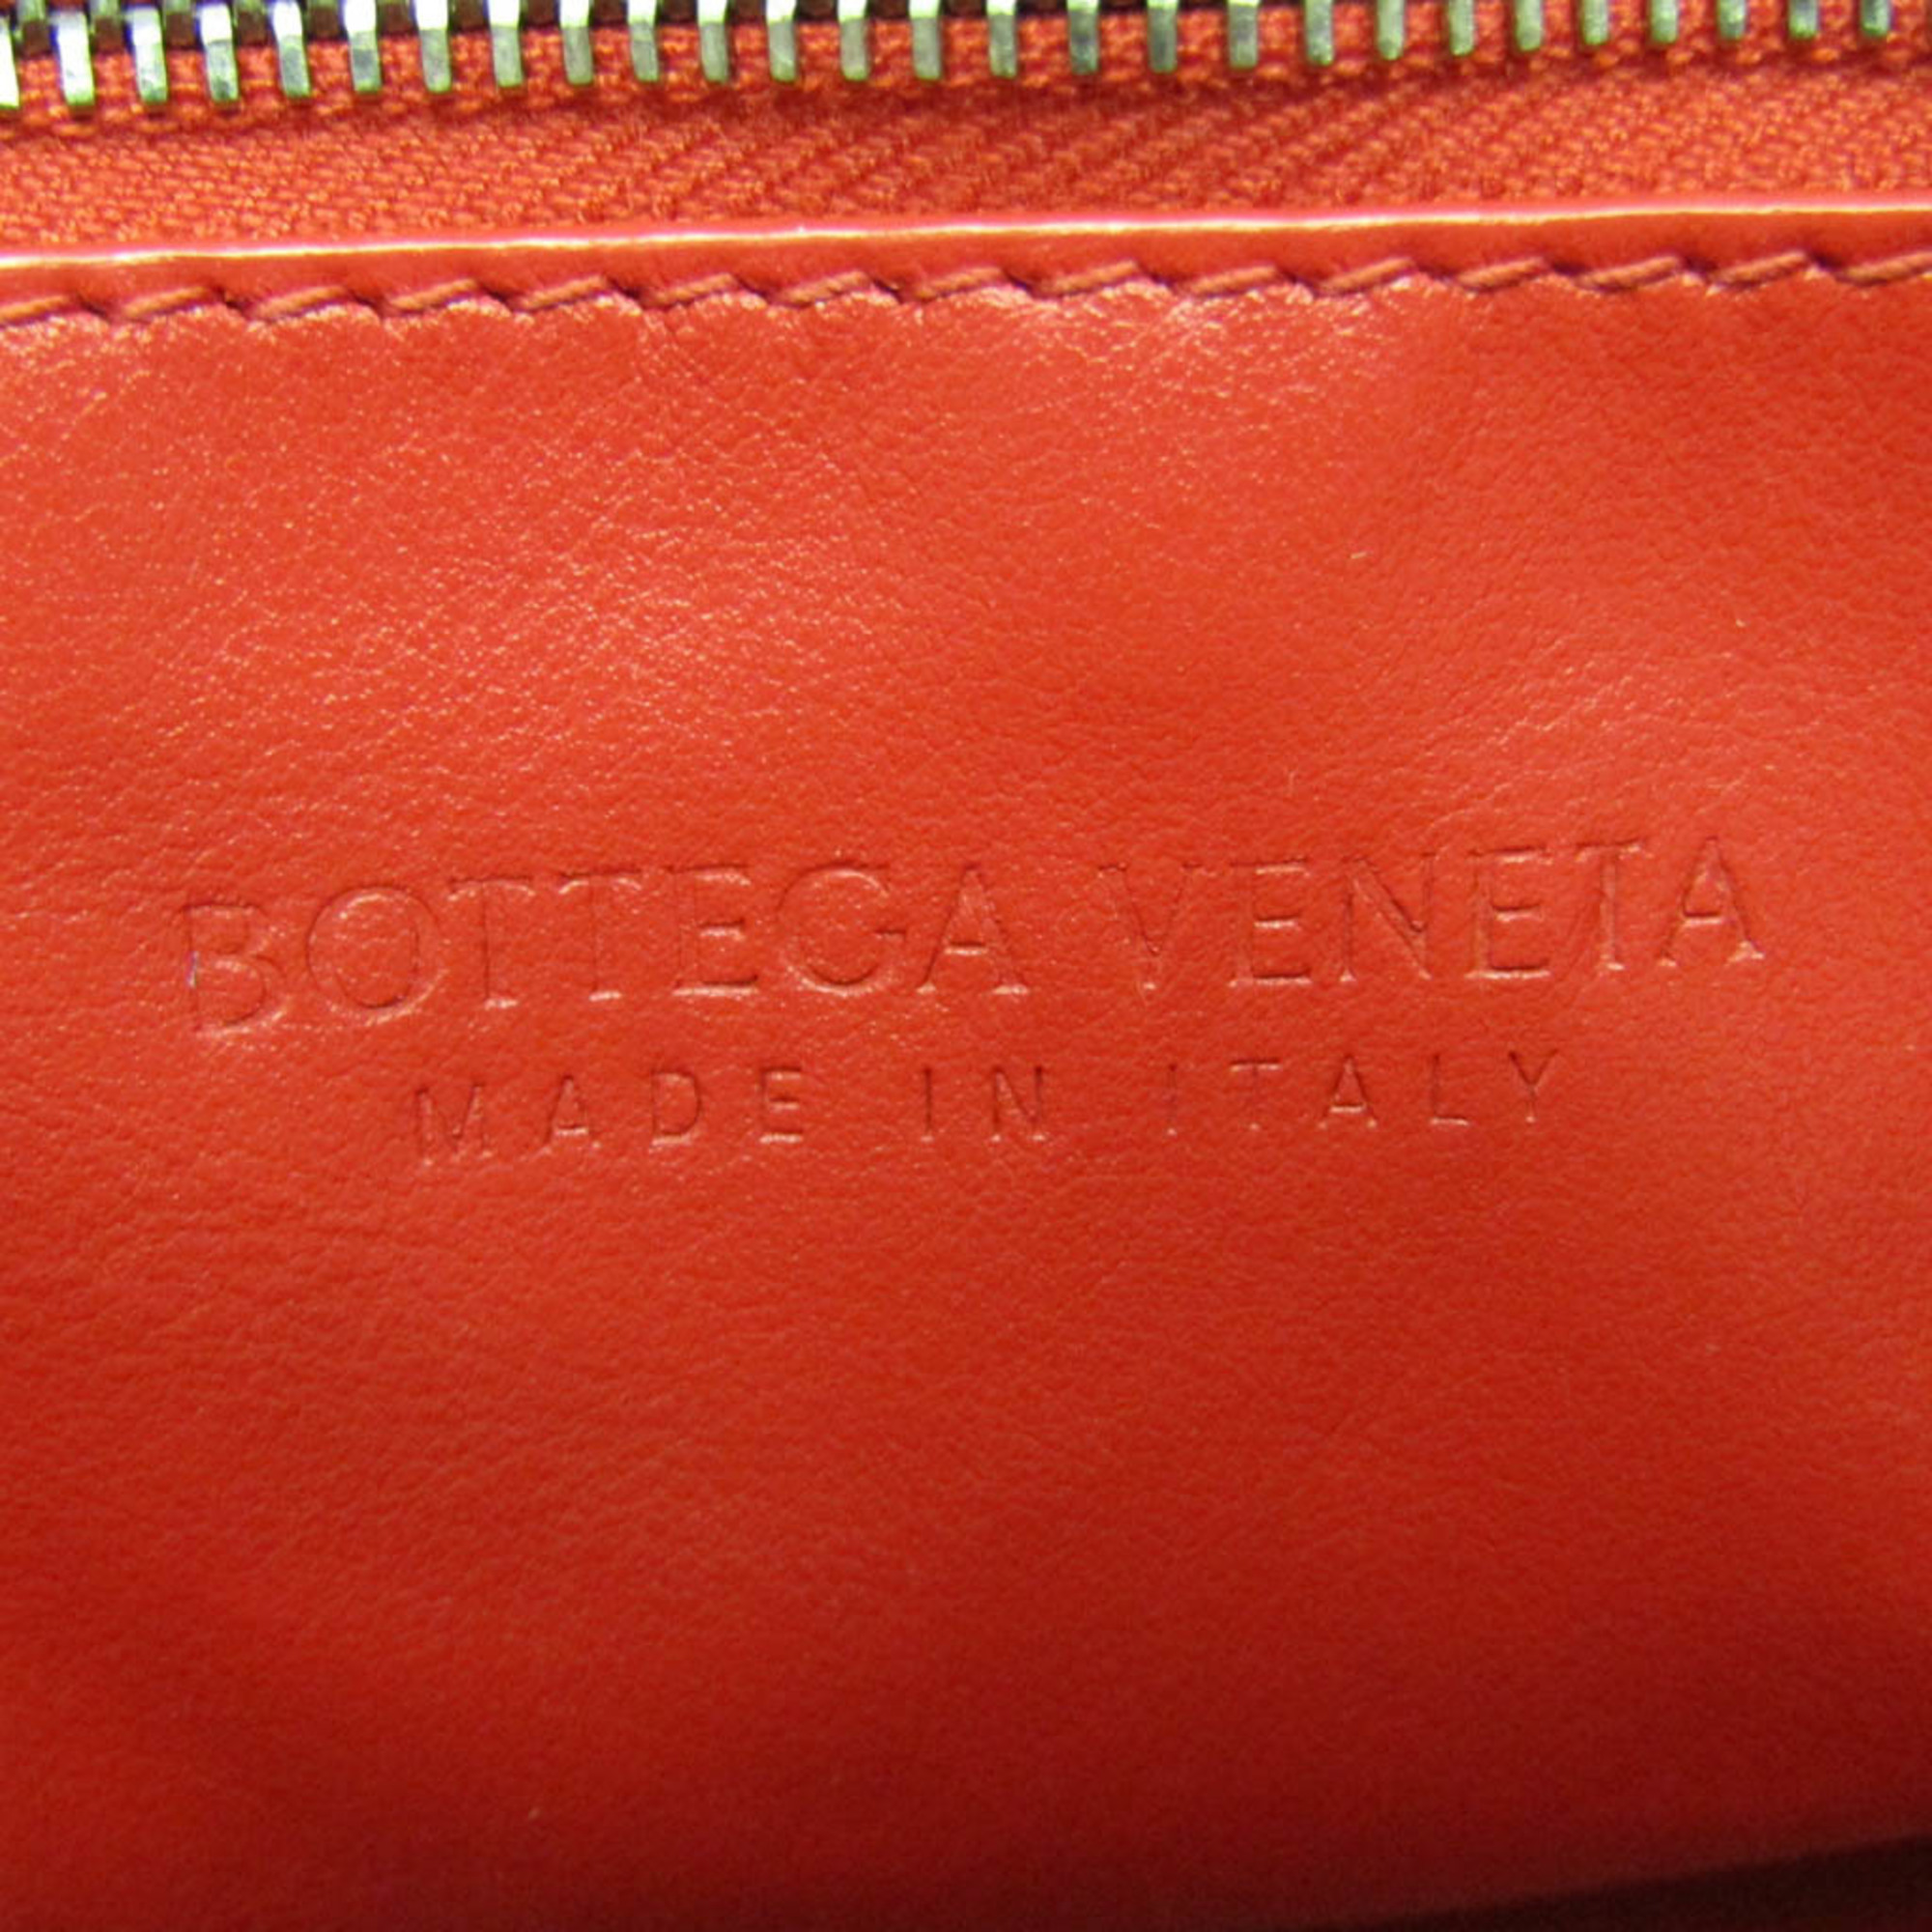 ボッテガ・ヴェネタ(Bottega Veneta) イントレチャート レディース ...